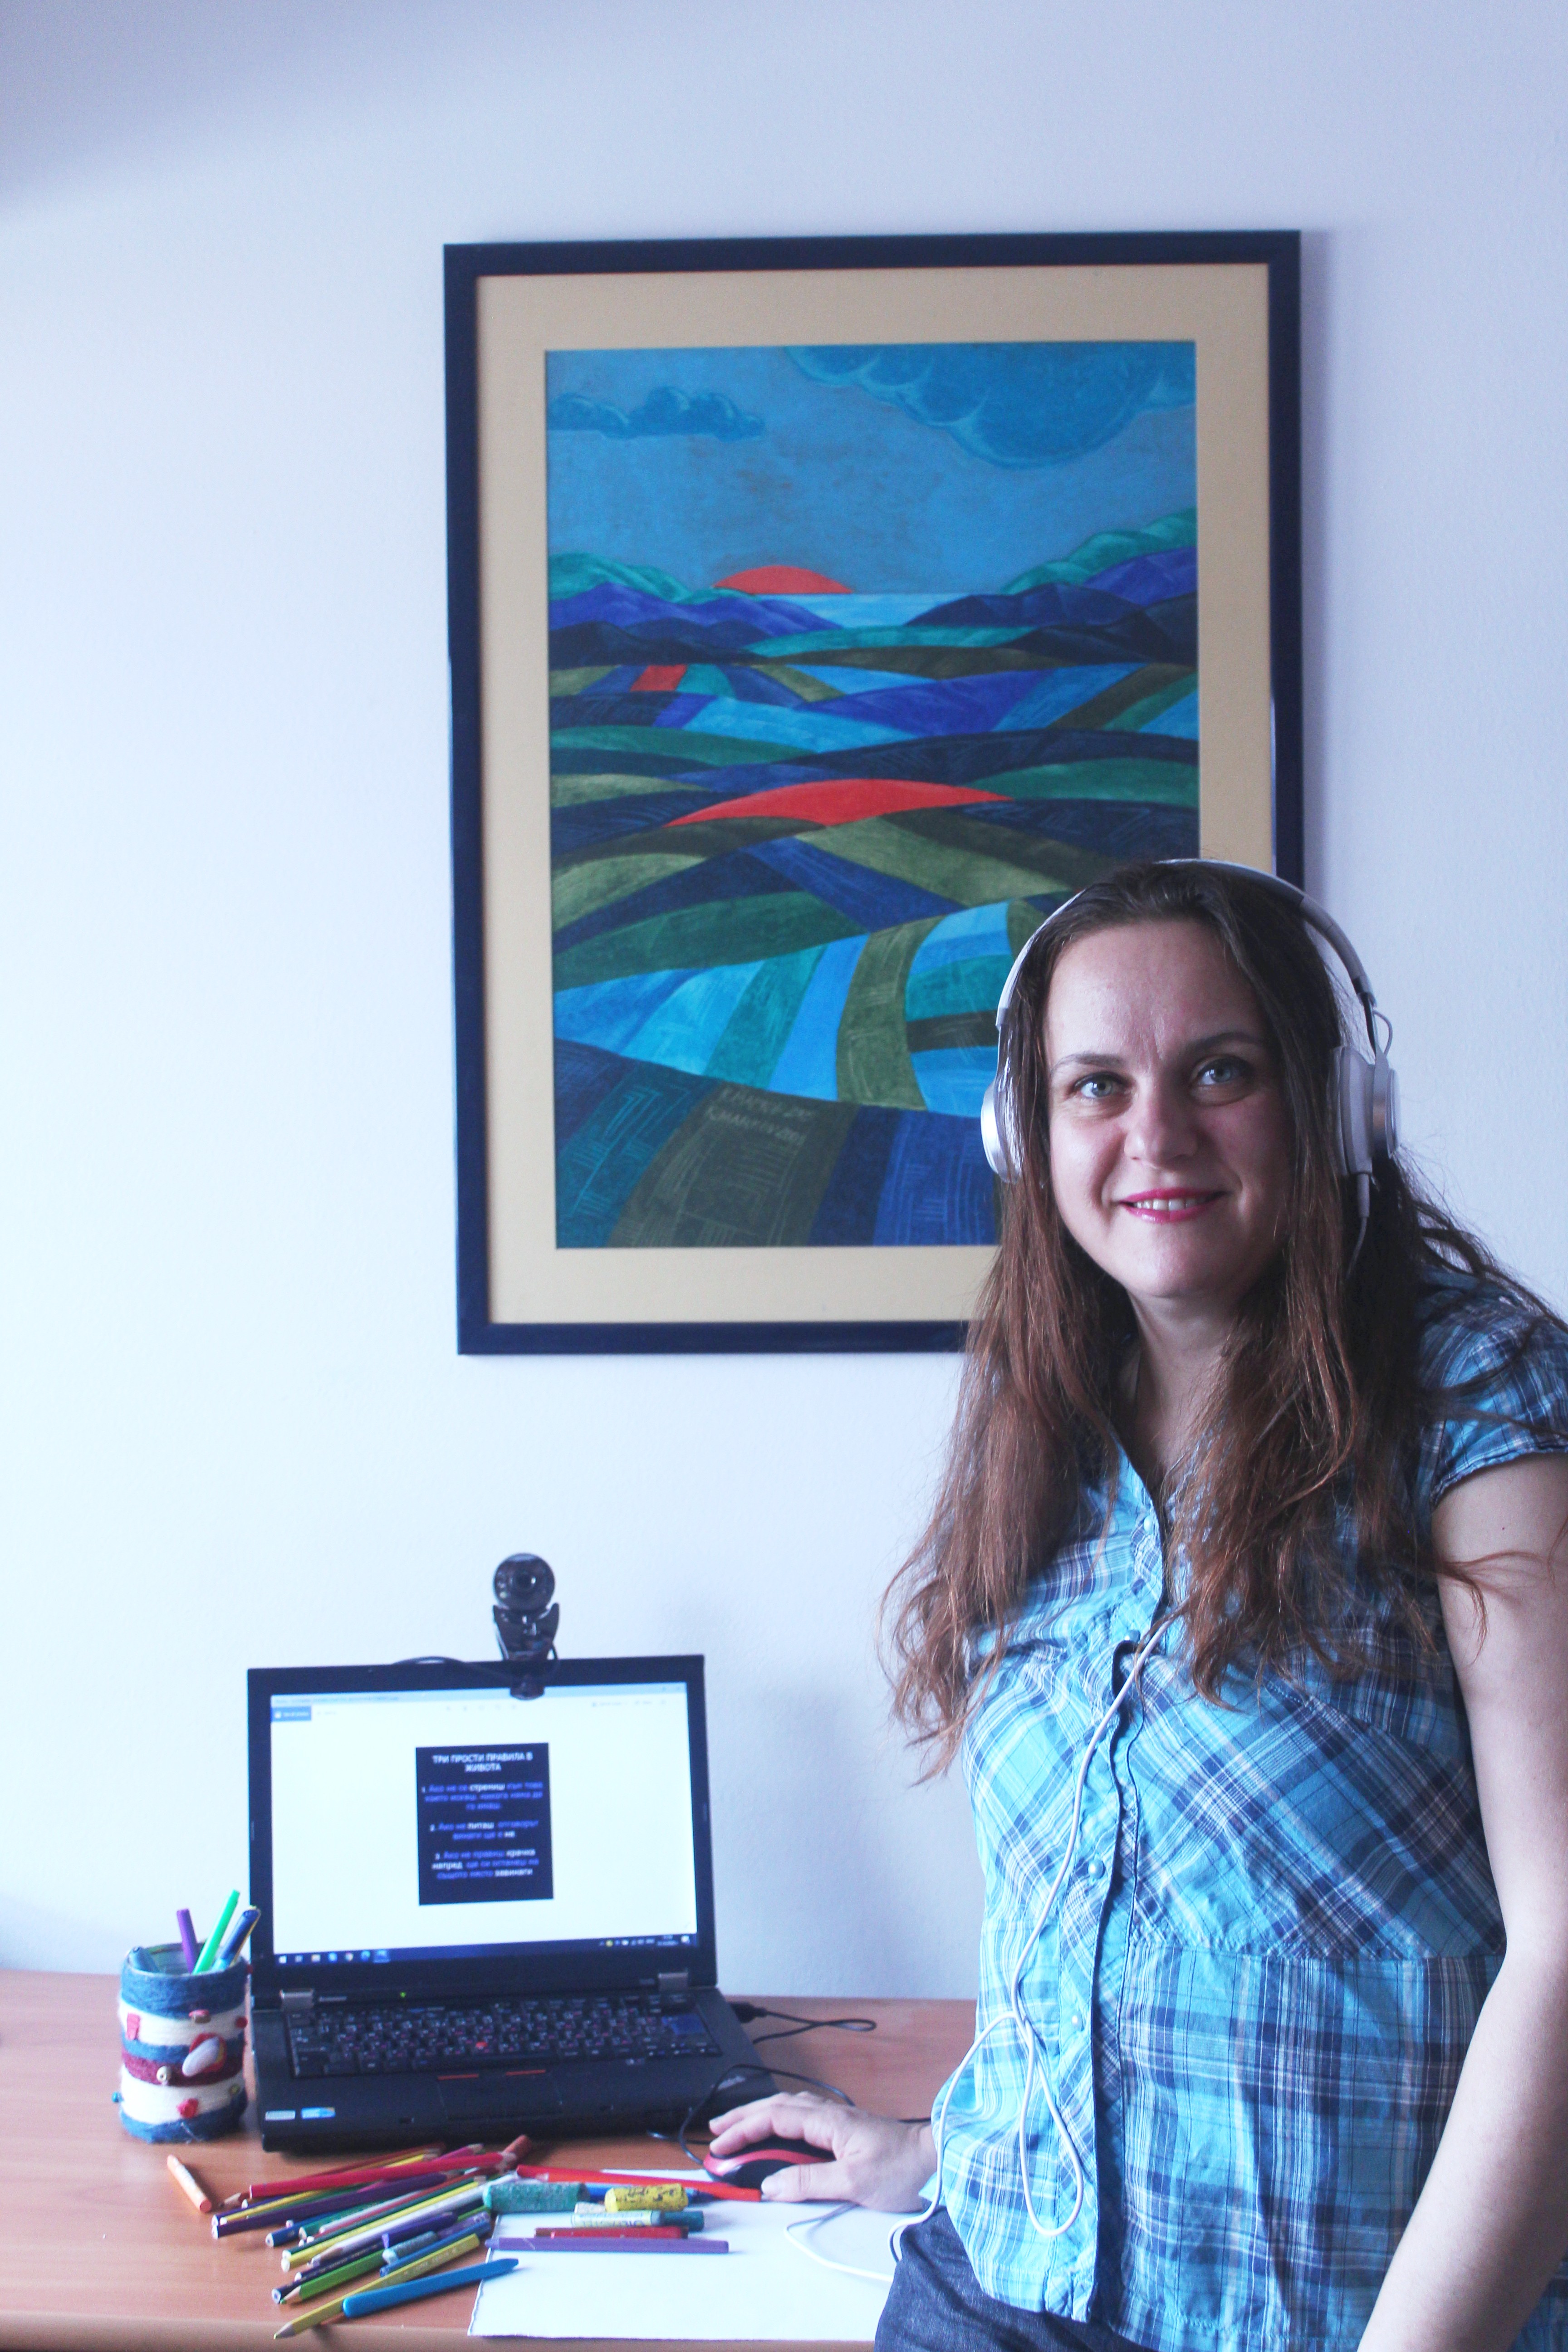 Това е изображение на млада жена пред компютър и арт материали, на фона на красива картина